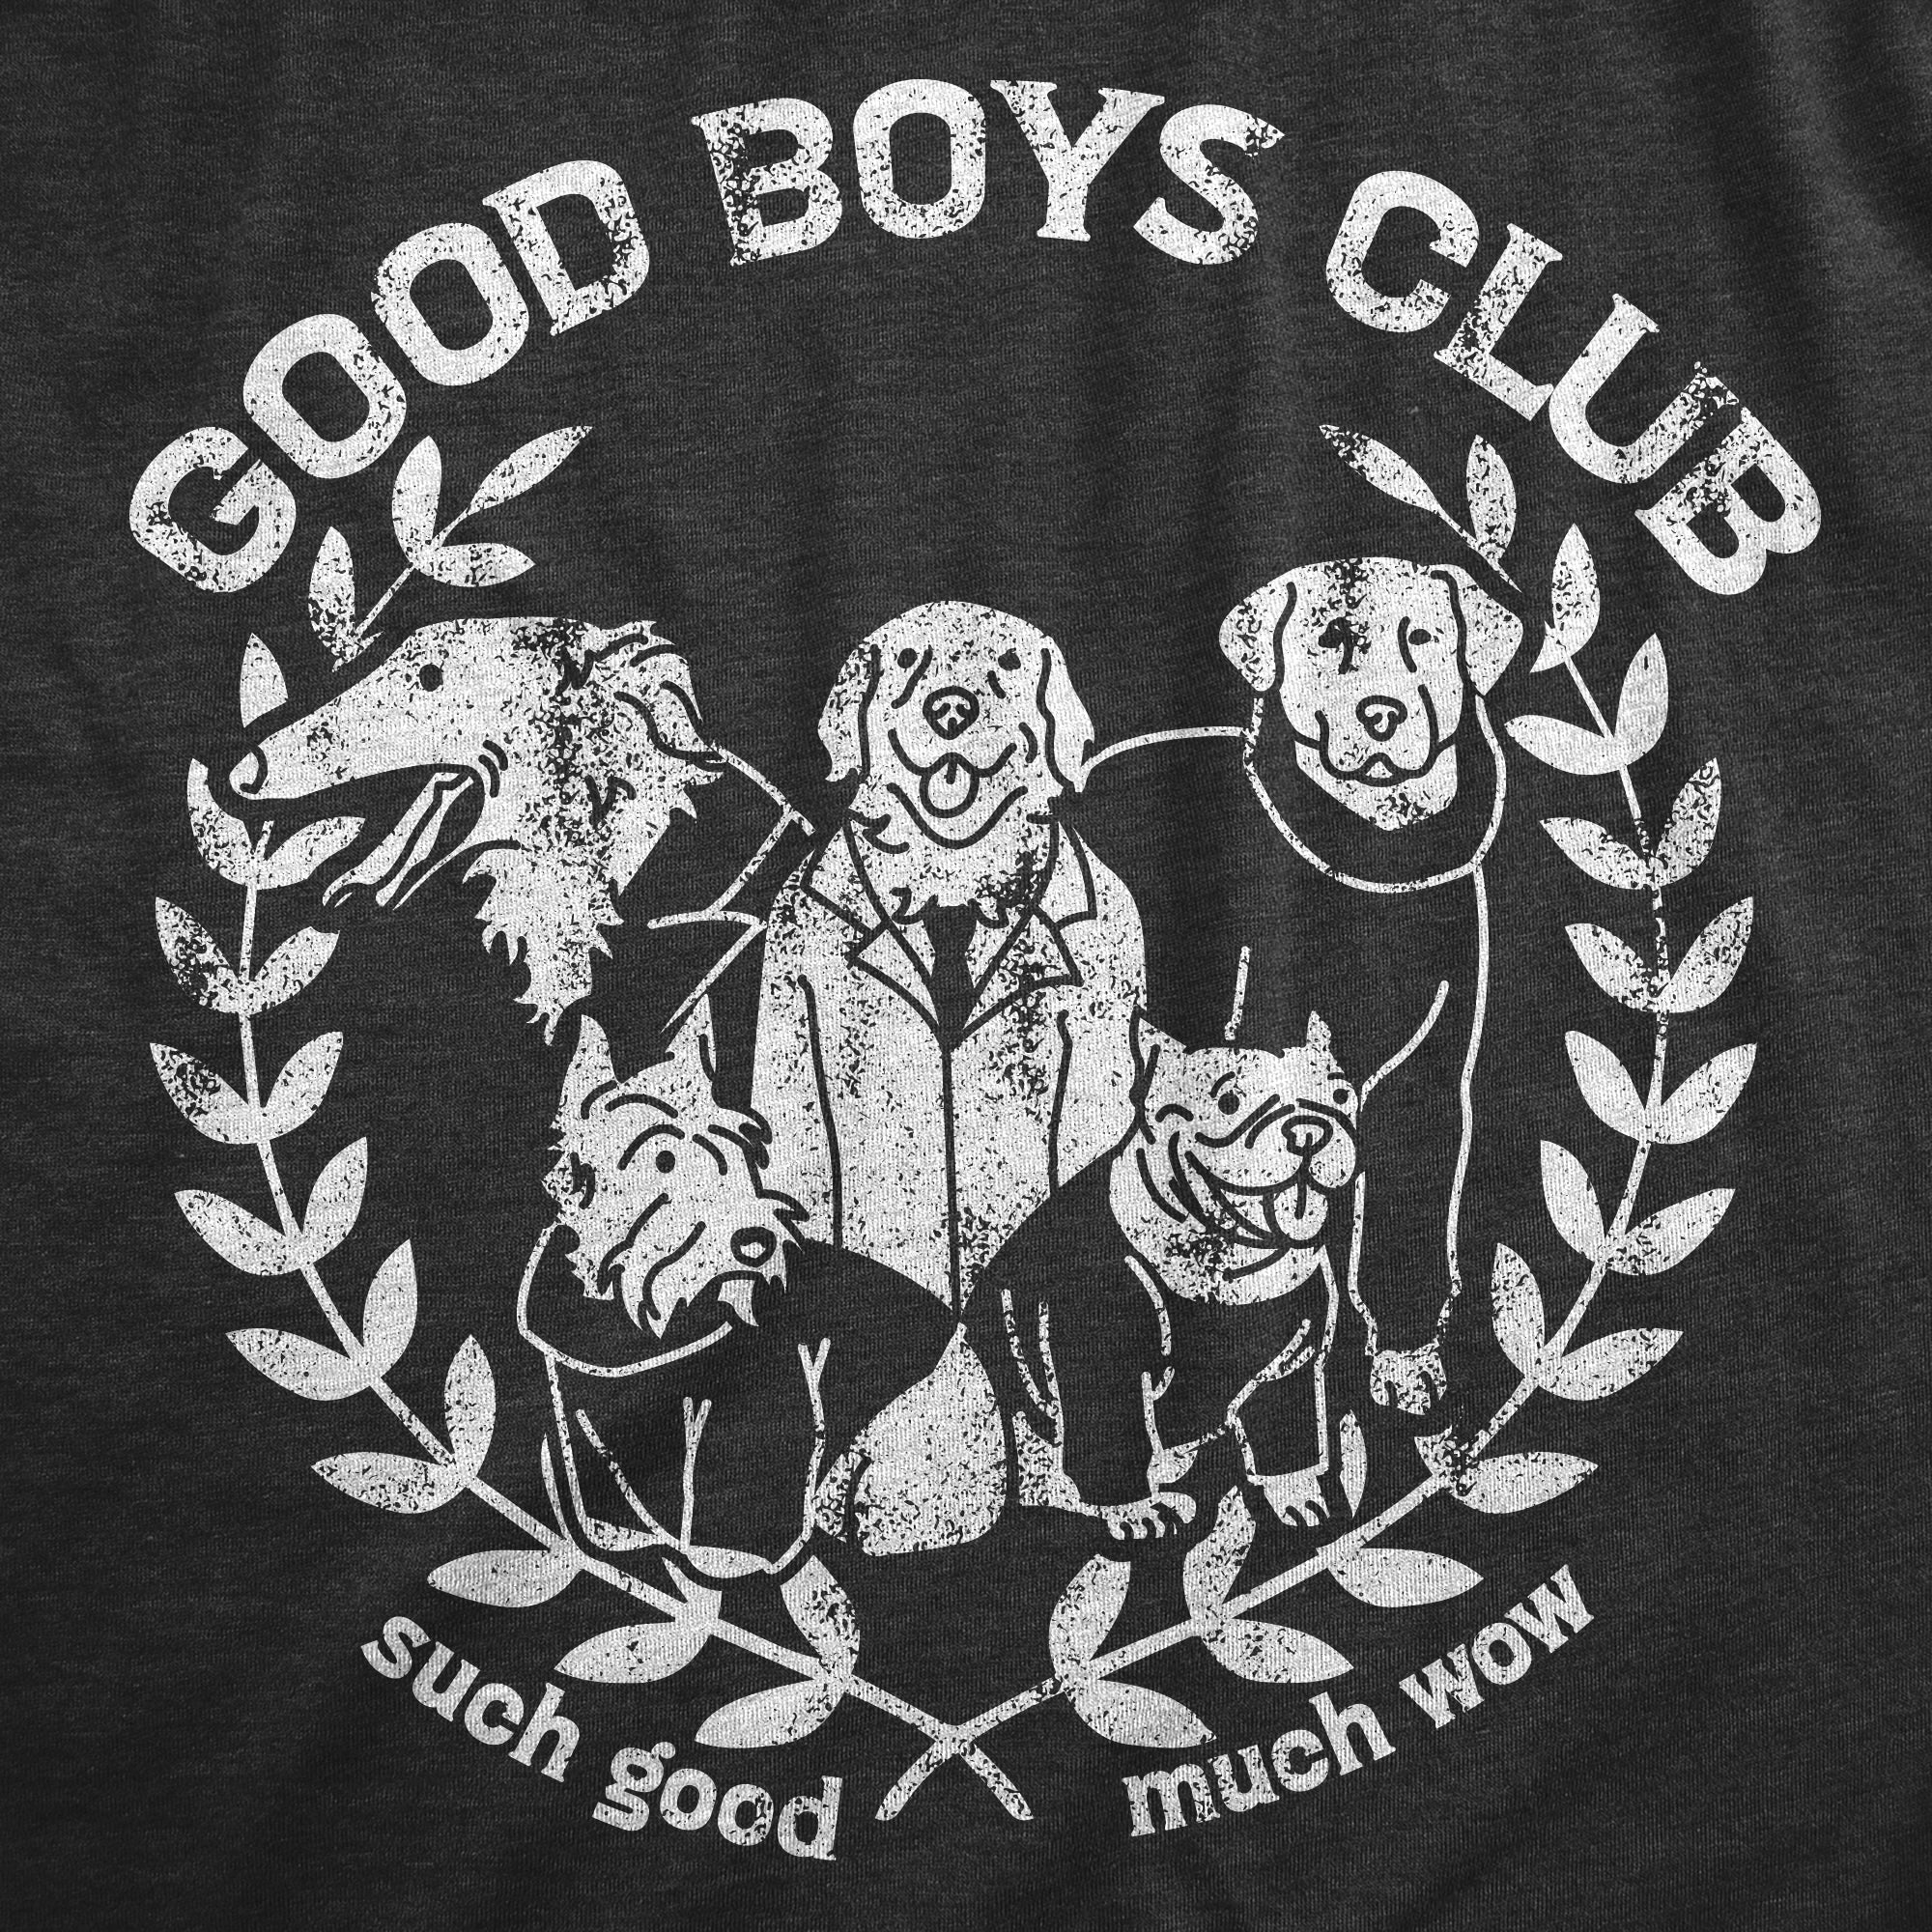 Funny Heather Black - GOODBOYS Good Boys Club Womens T Shirt Nerdy Dog Tee